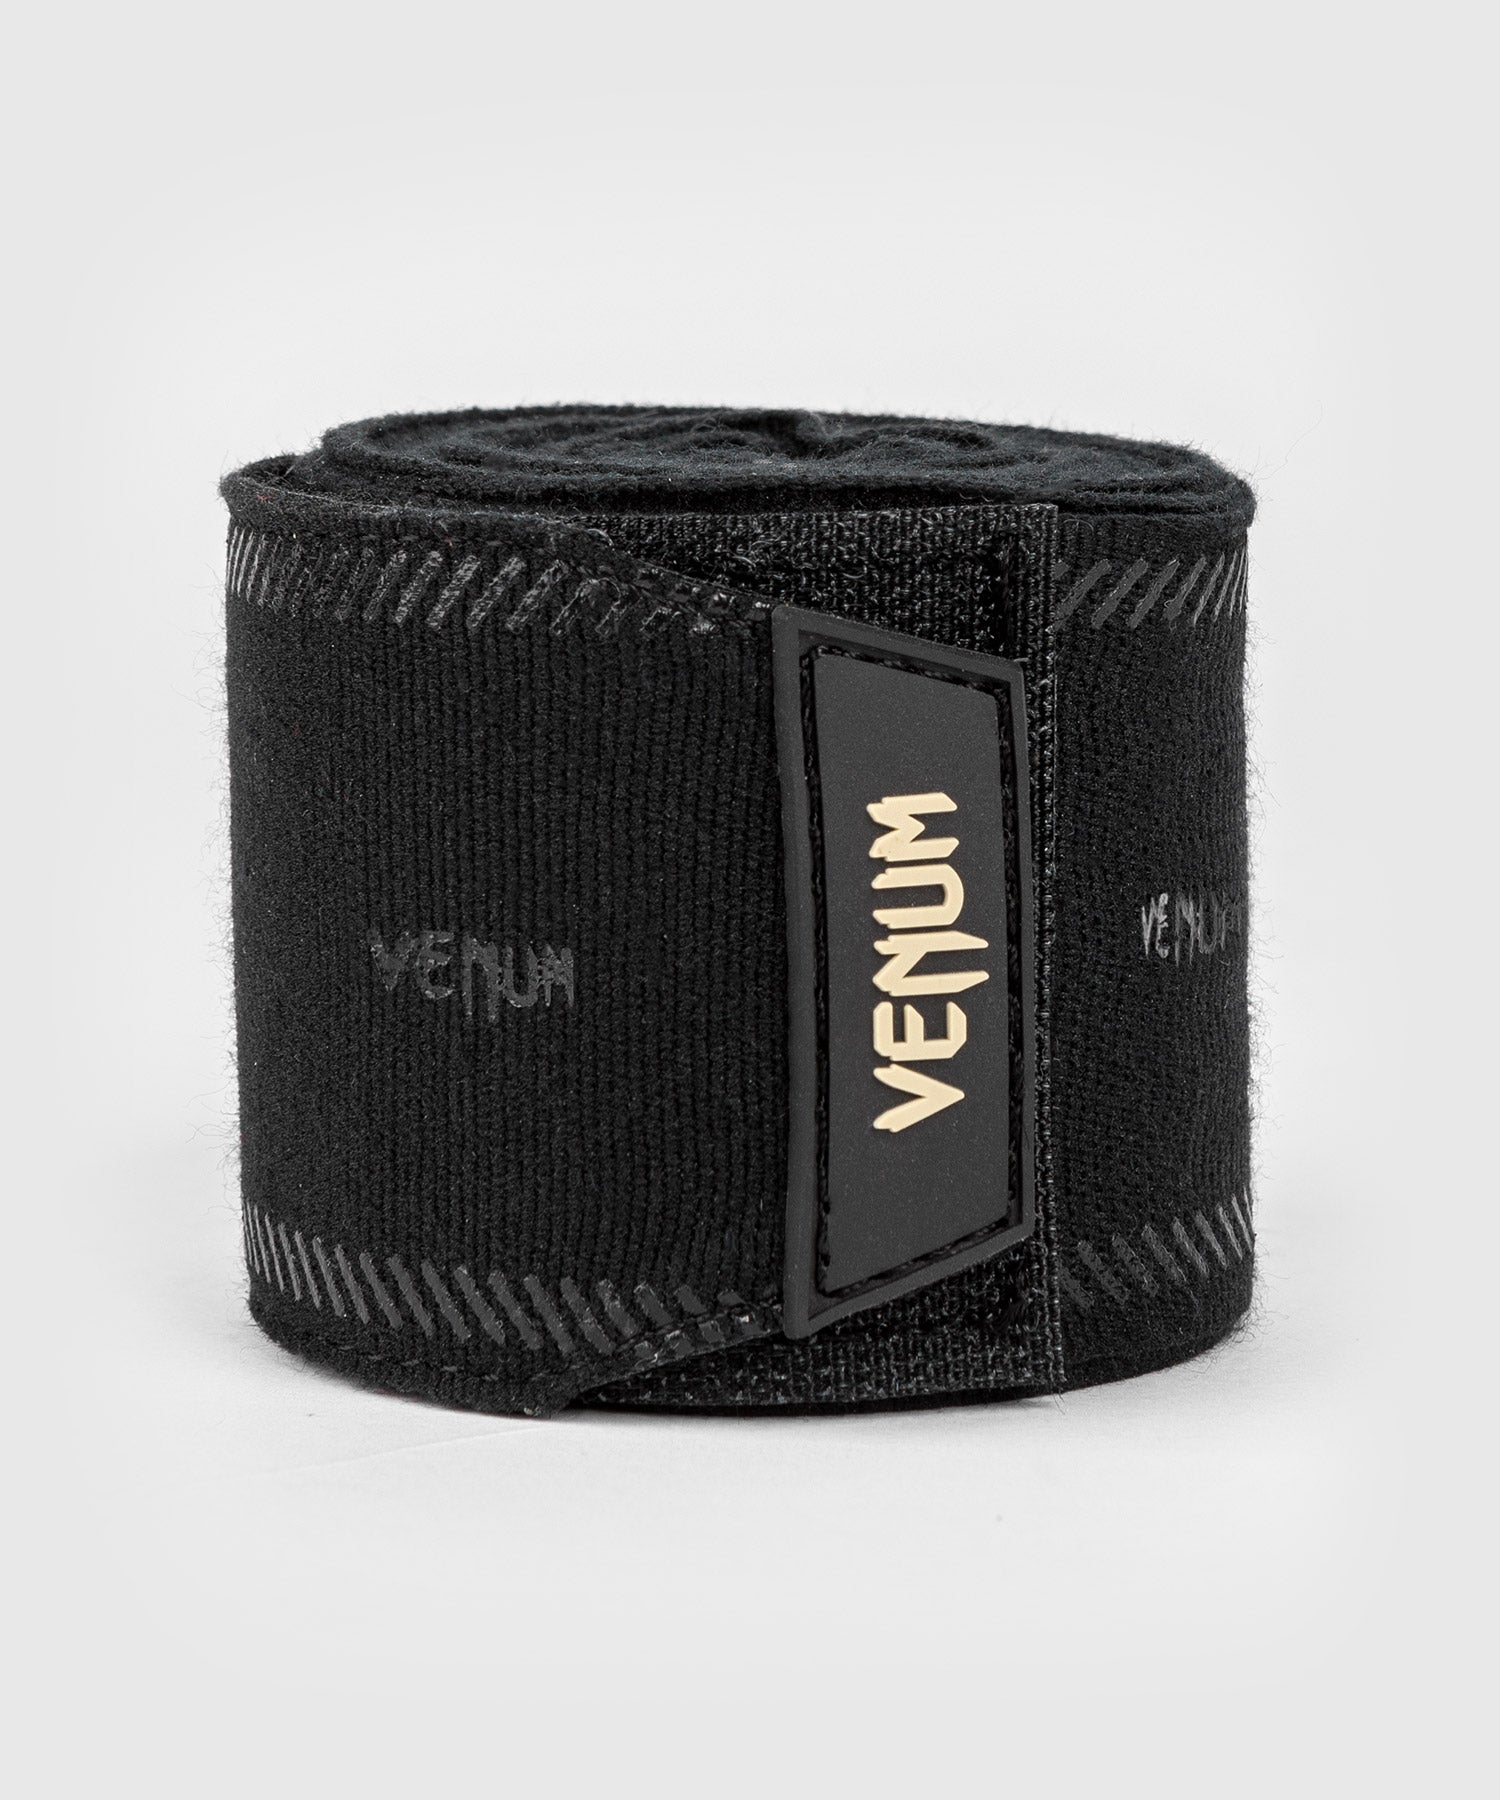 Bandes de Boxe Venum Impact Evo - Noir - 2,5m – Venum France